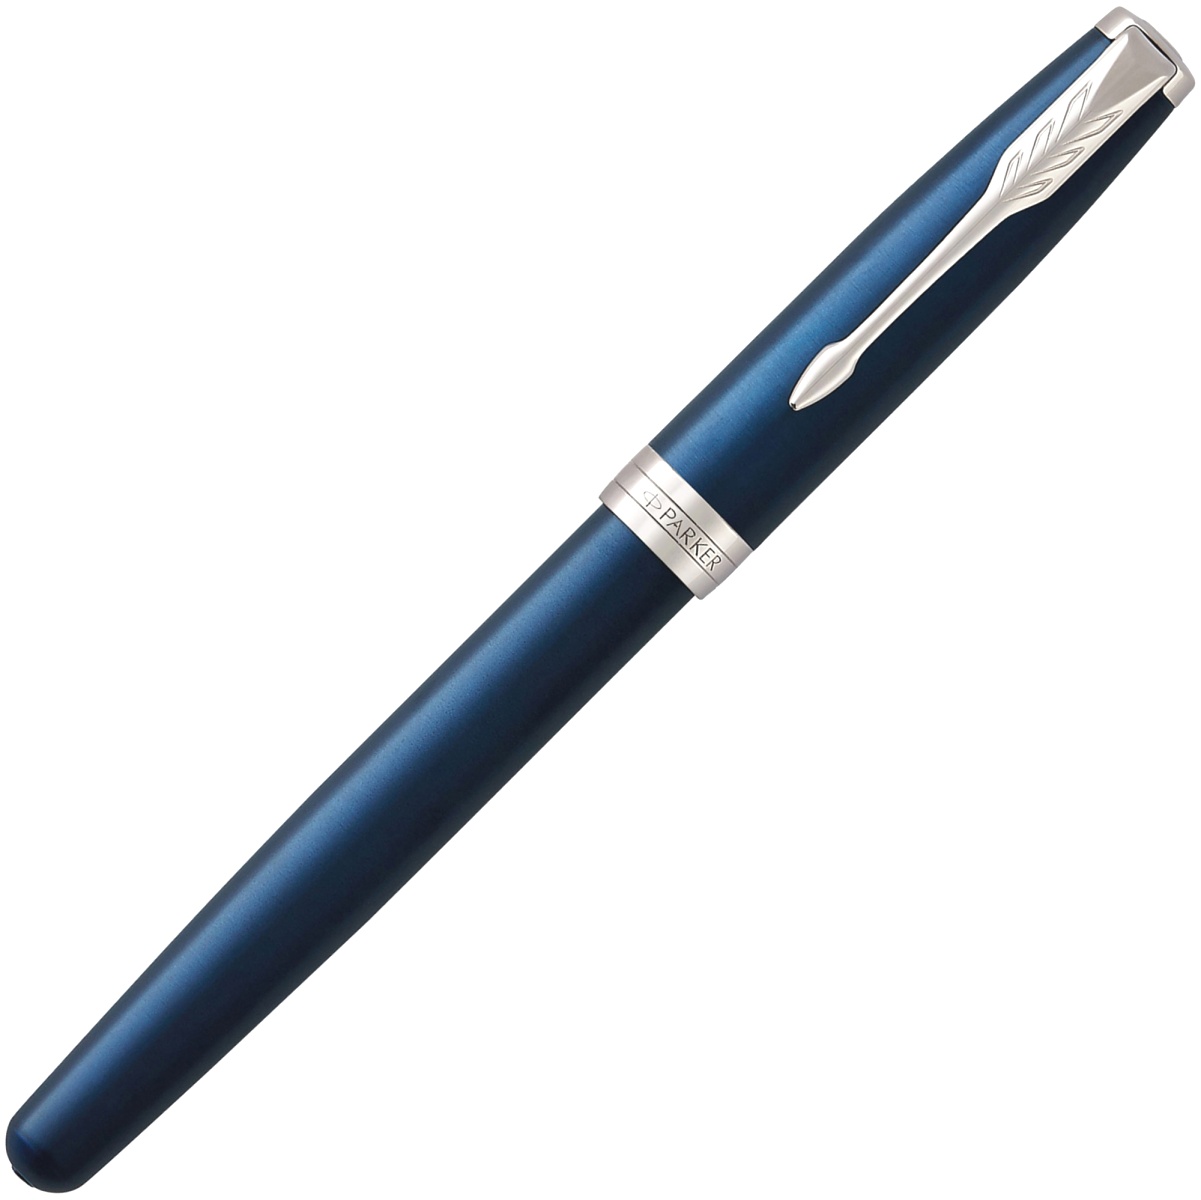  Перьевая ручка Parker Sonnet F539, Subtle Blue Lacquer CT (Перо F), фото 2